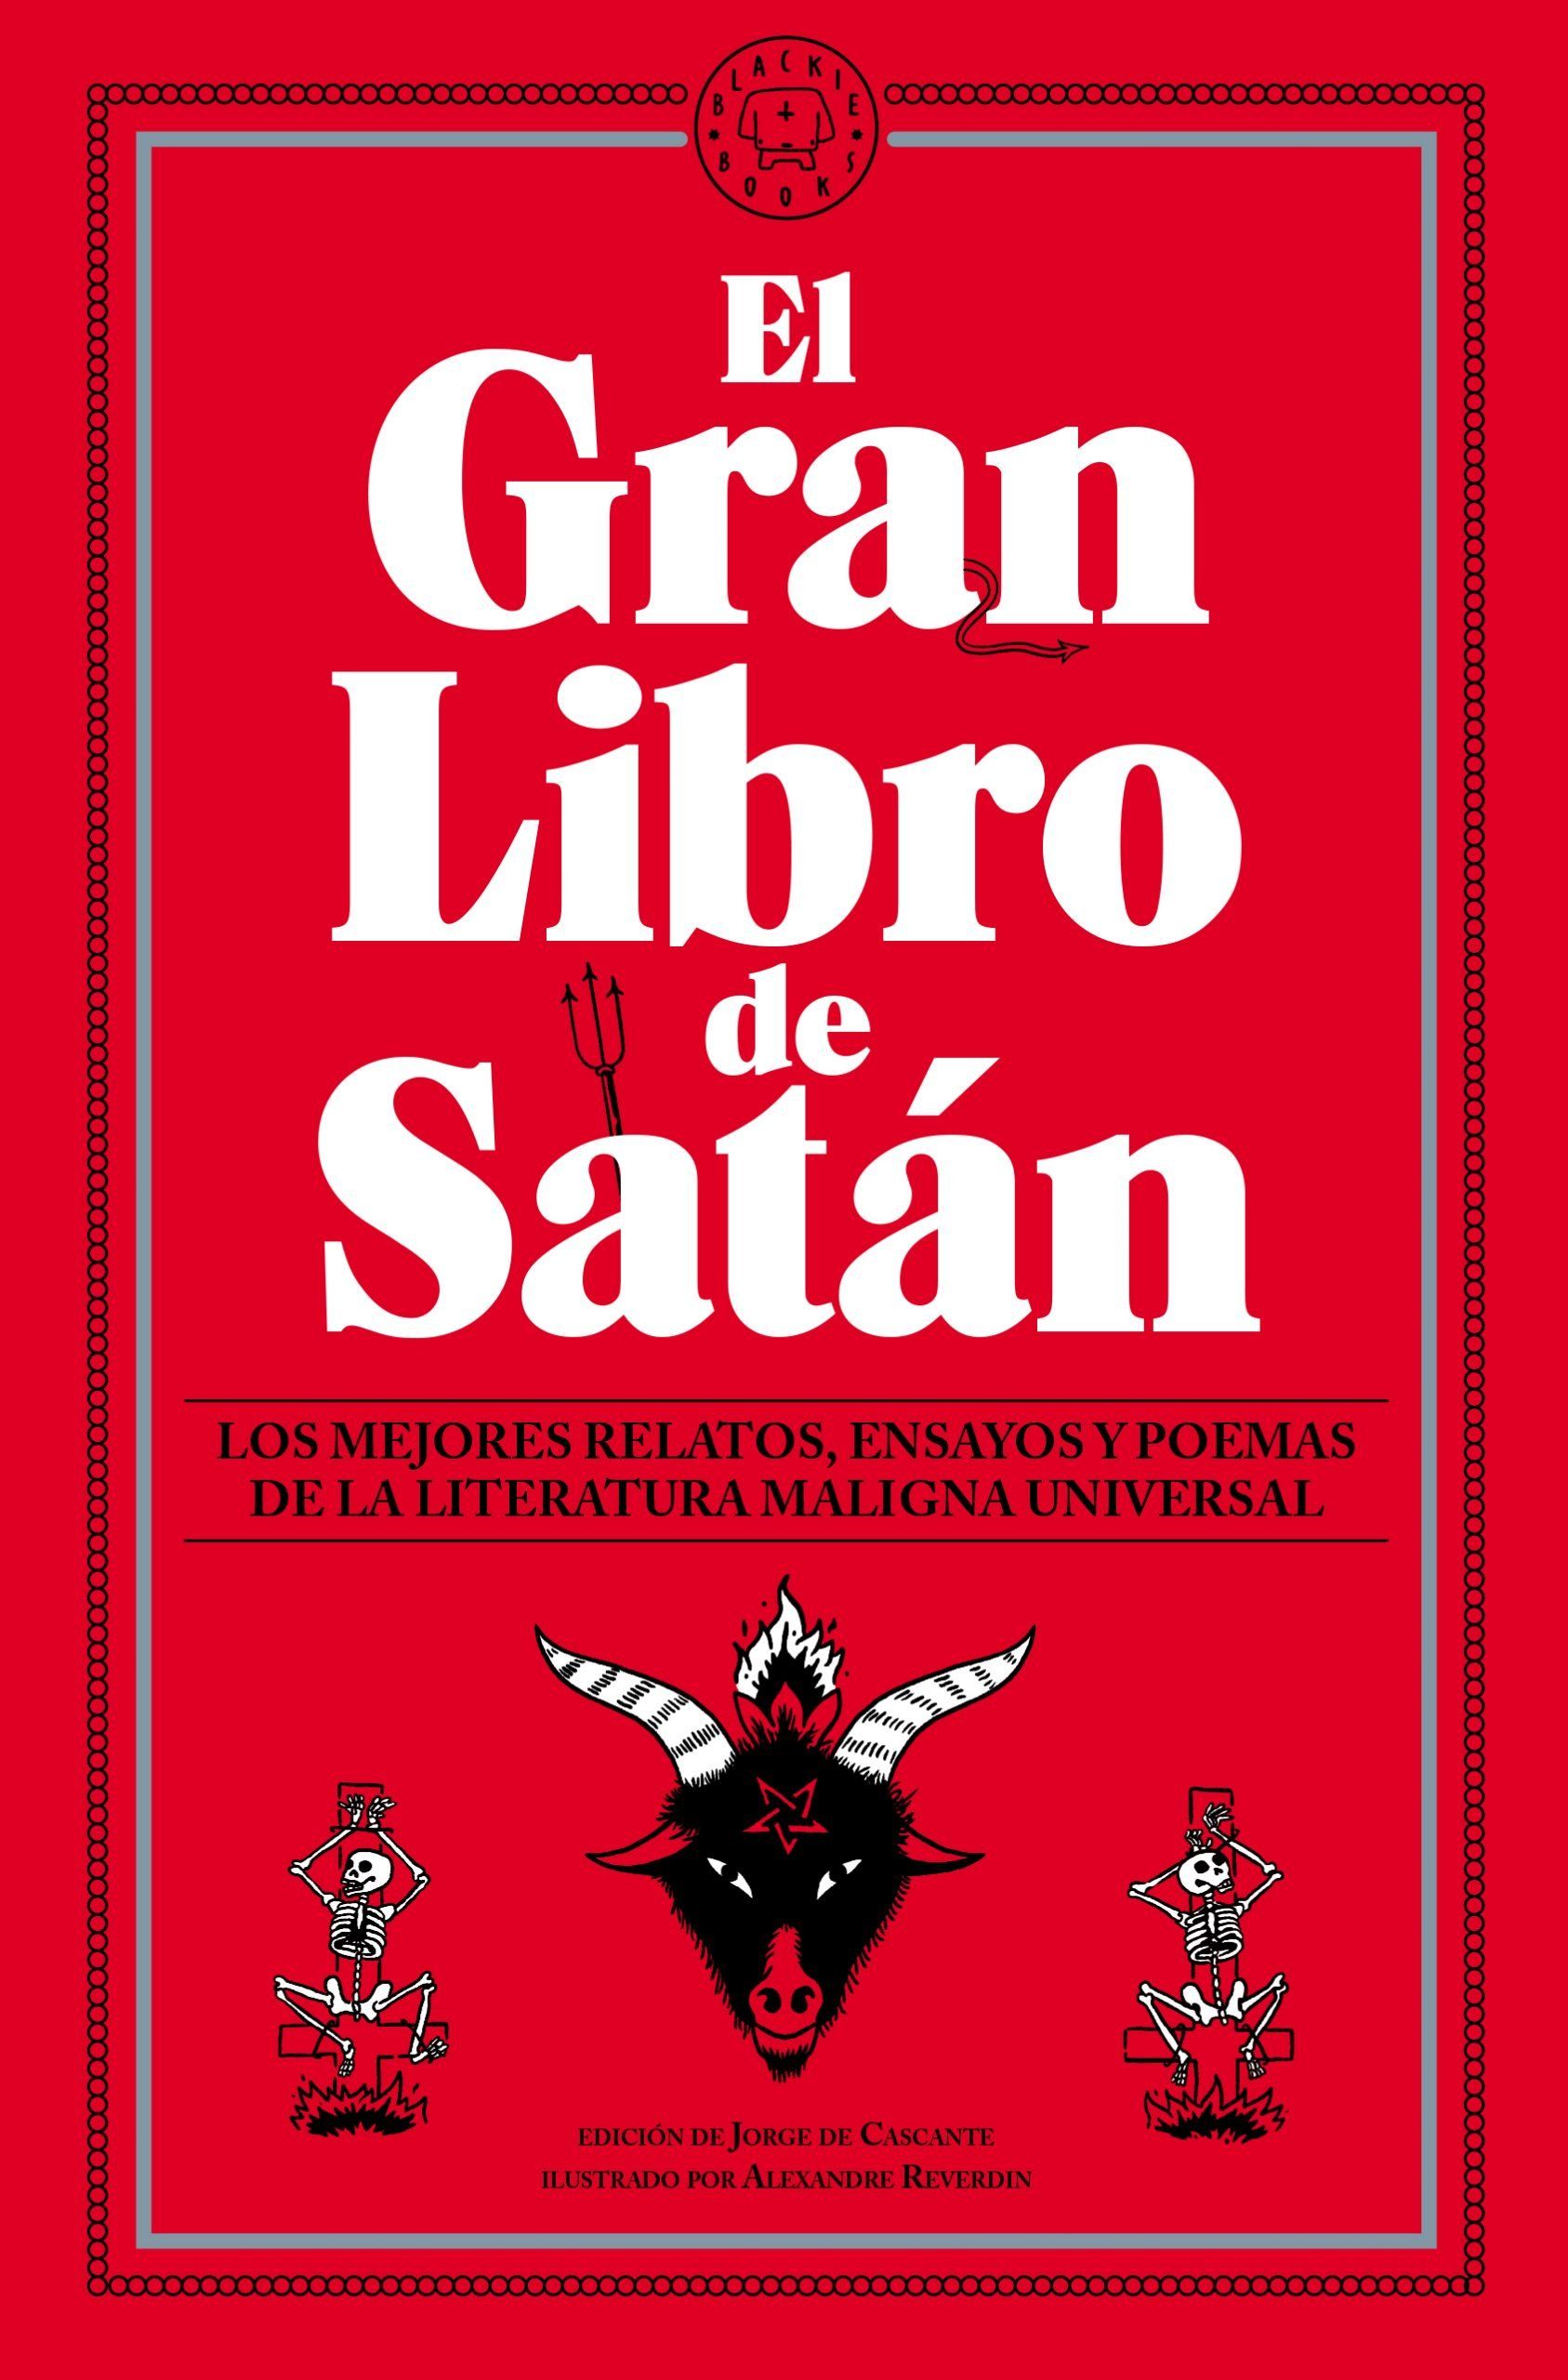 EL GRAN LIBRO DE SATÁN. LOS MEJORES RELATOS, ENSAYOS Y POEMAS DE LA LITERATURA MALIGNA UNIVERSAL.